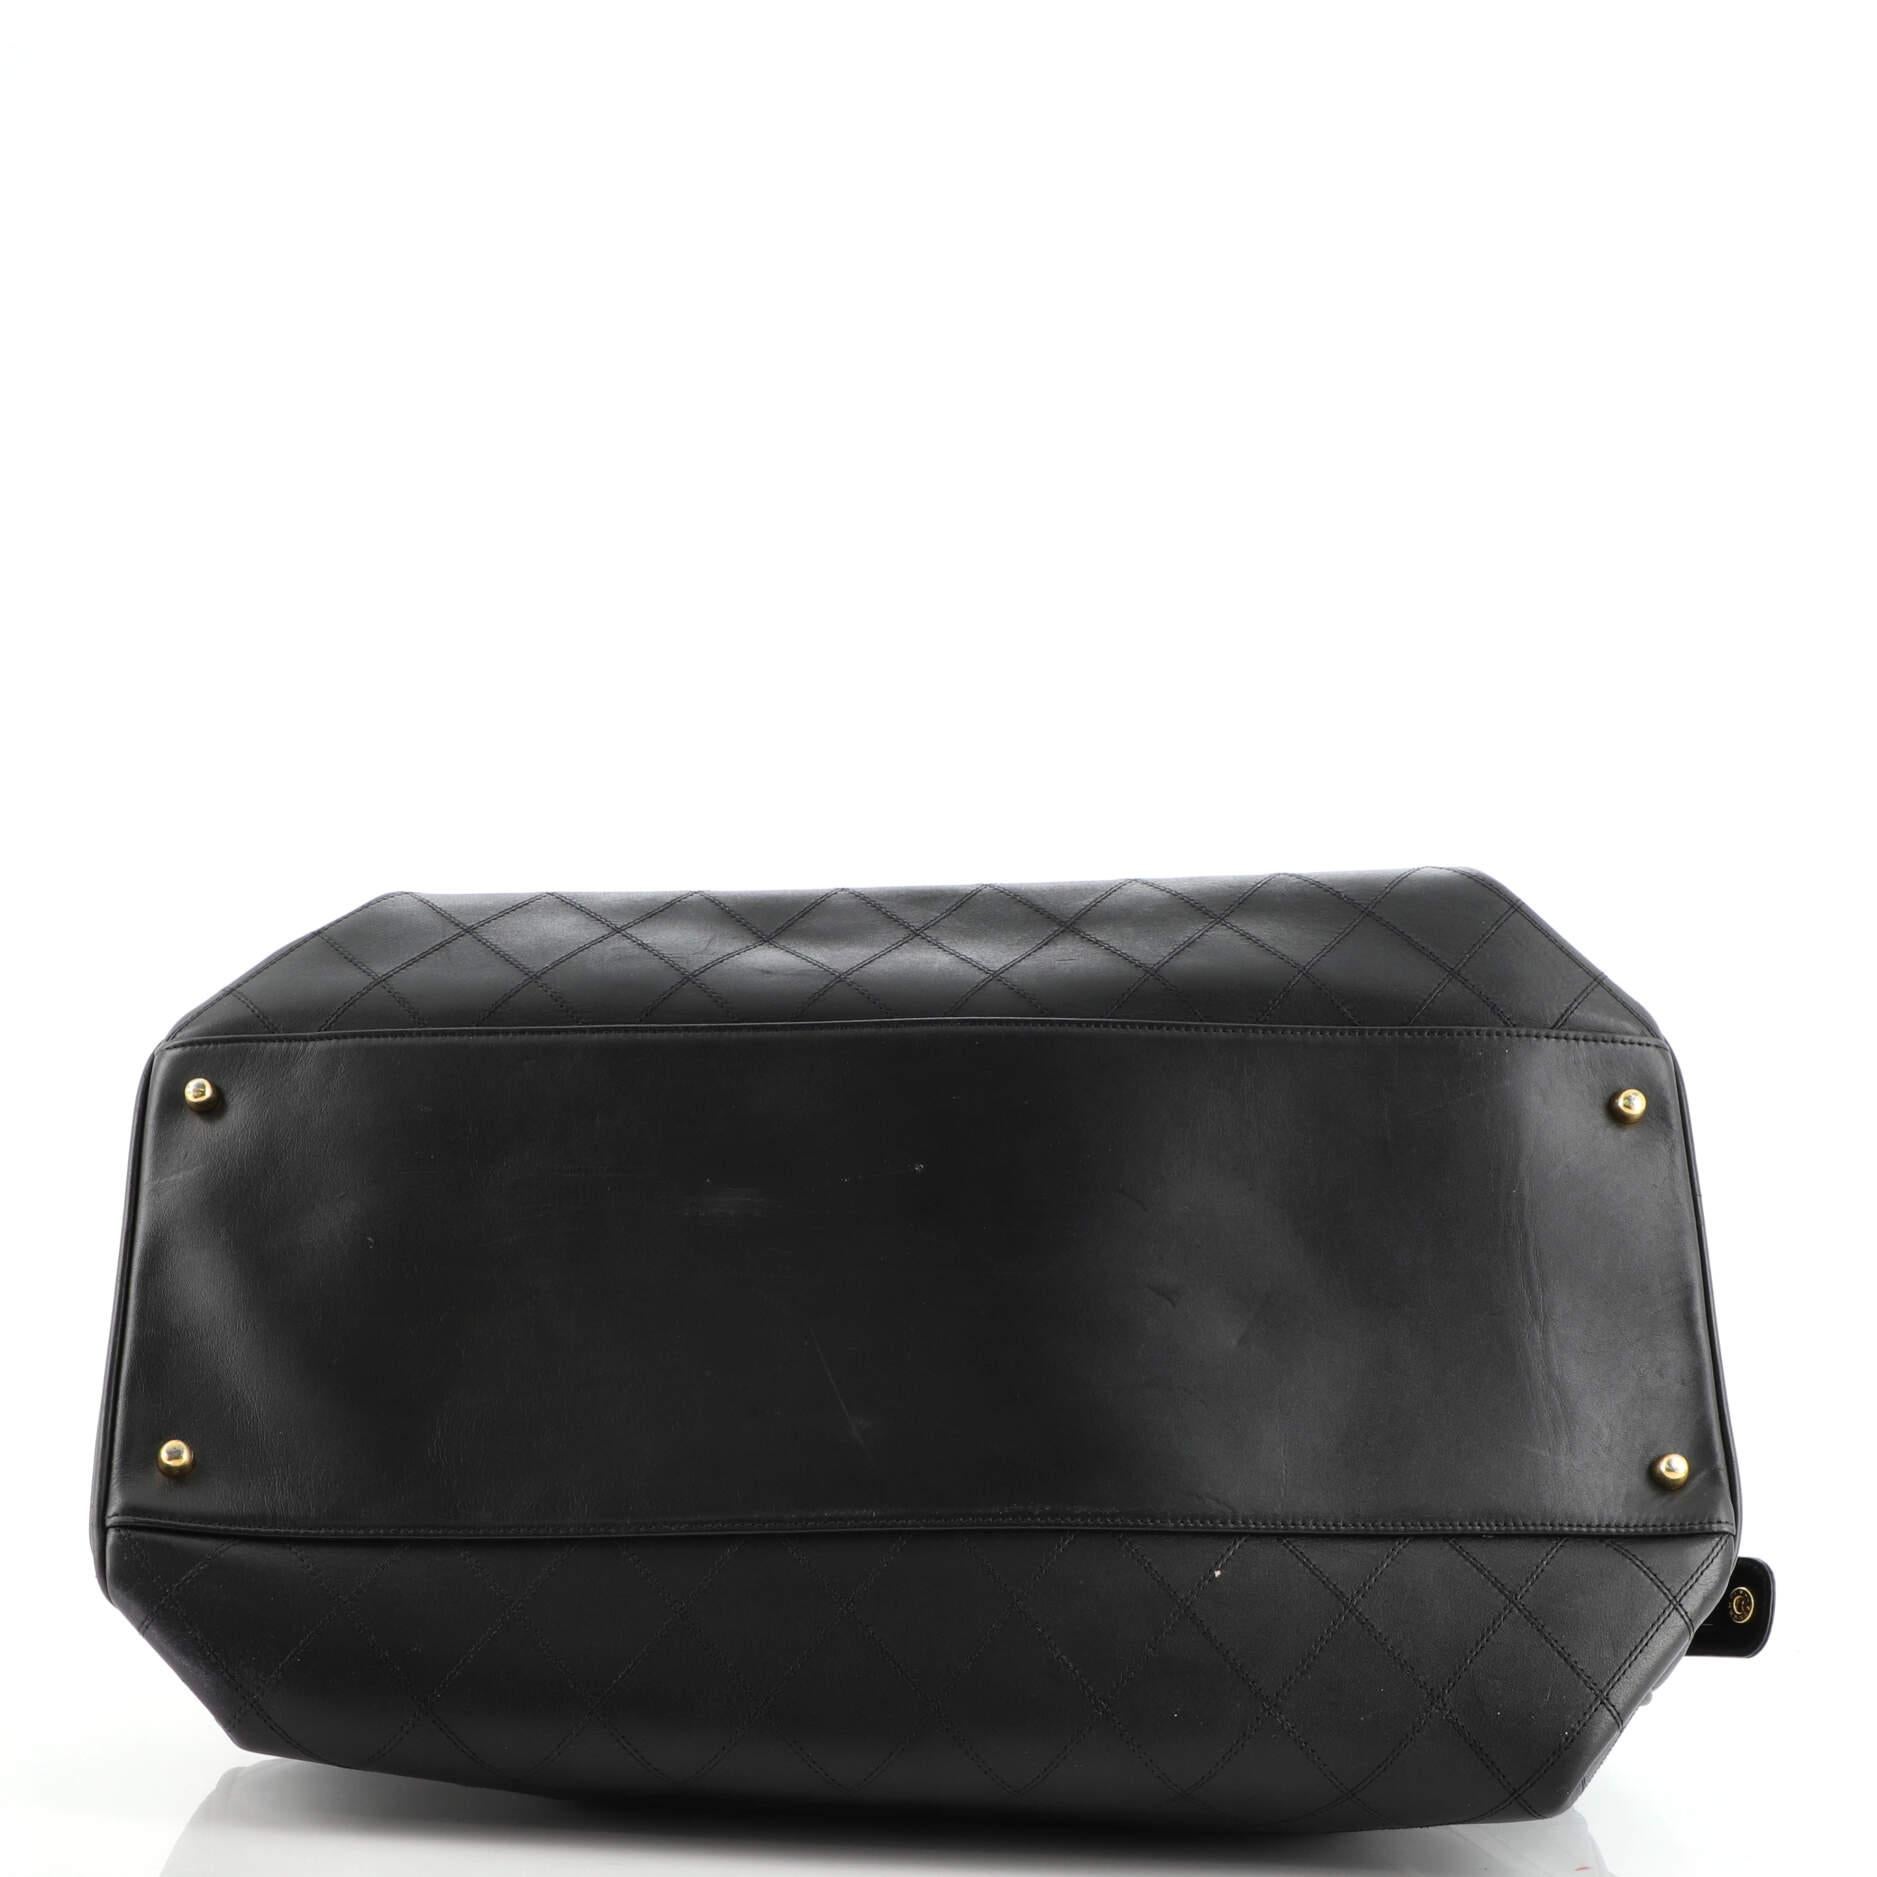 Black Chanel Vintage Supermodel Weekender Bag Quilted Leather Large